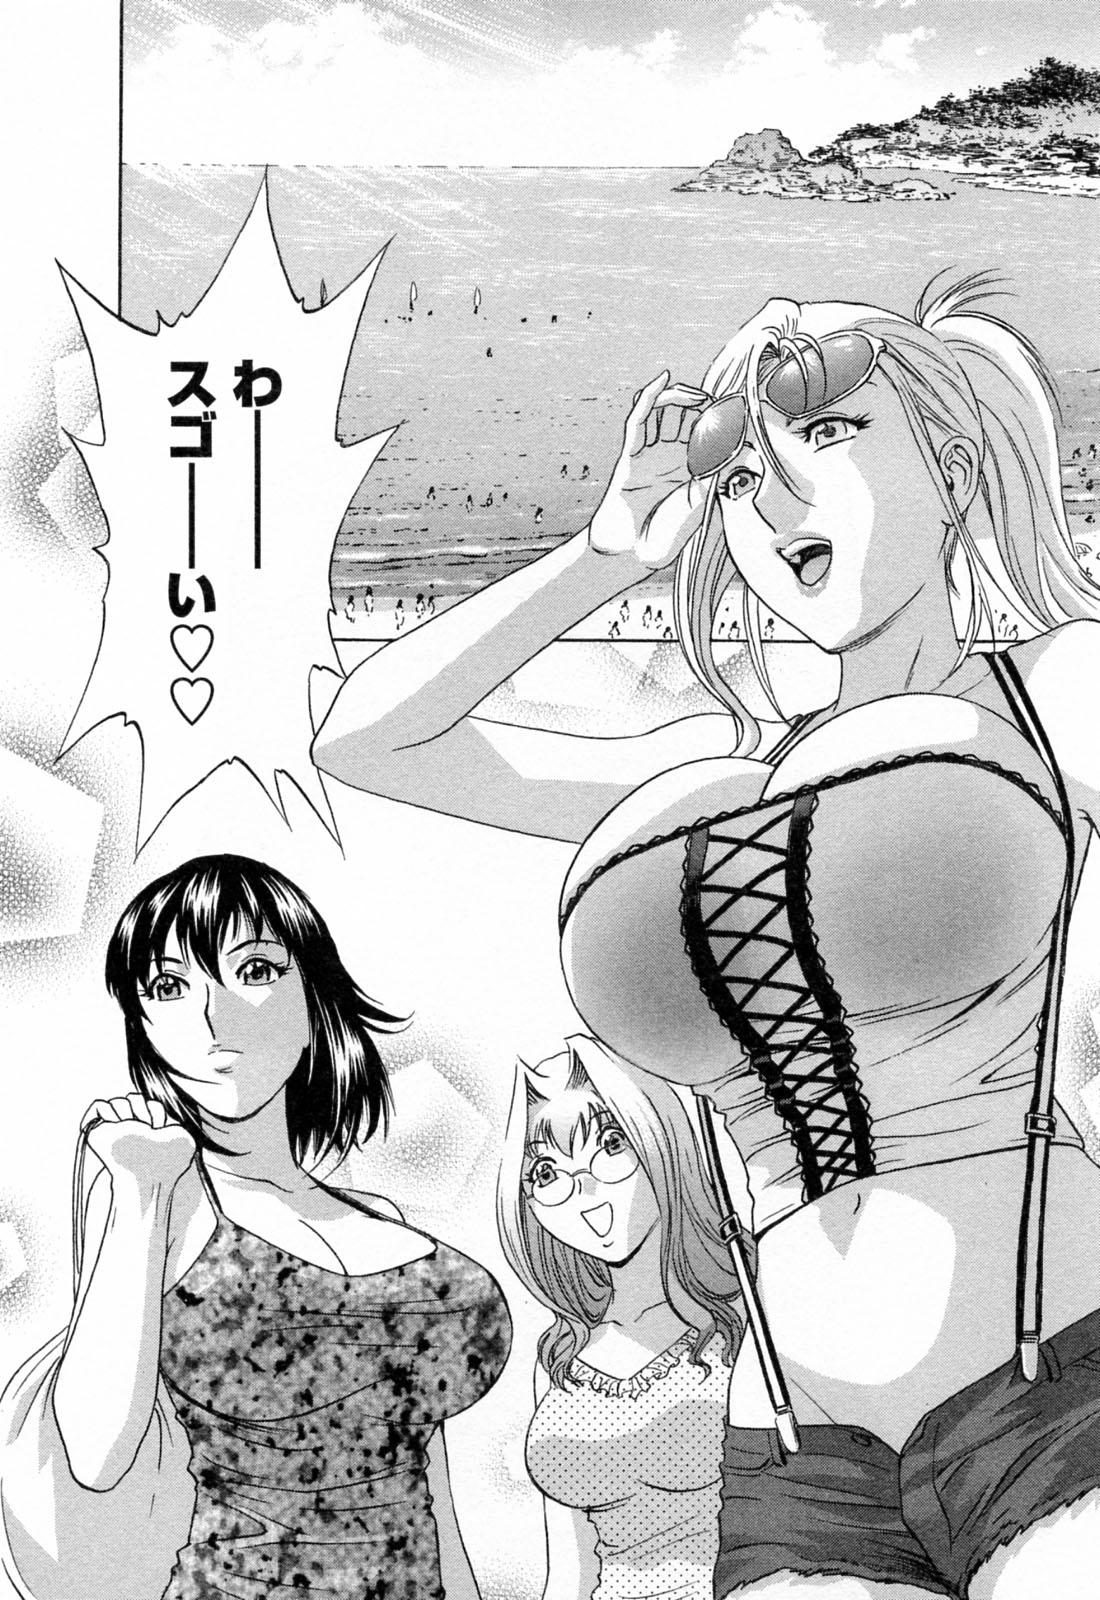 [Hidemaru] Mo-Retsu! Boin Sensei (Boing Boing Teacher) Vol.4 95